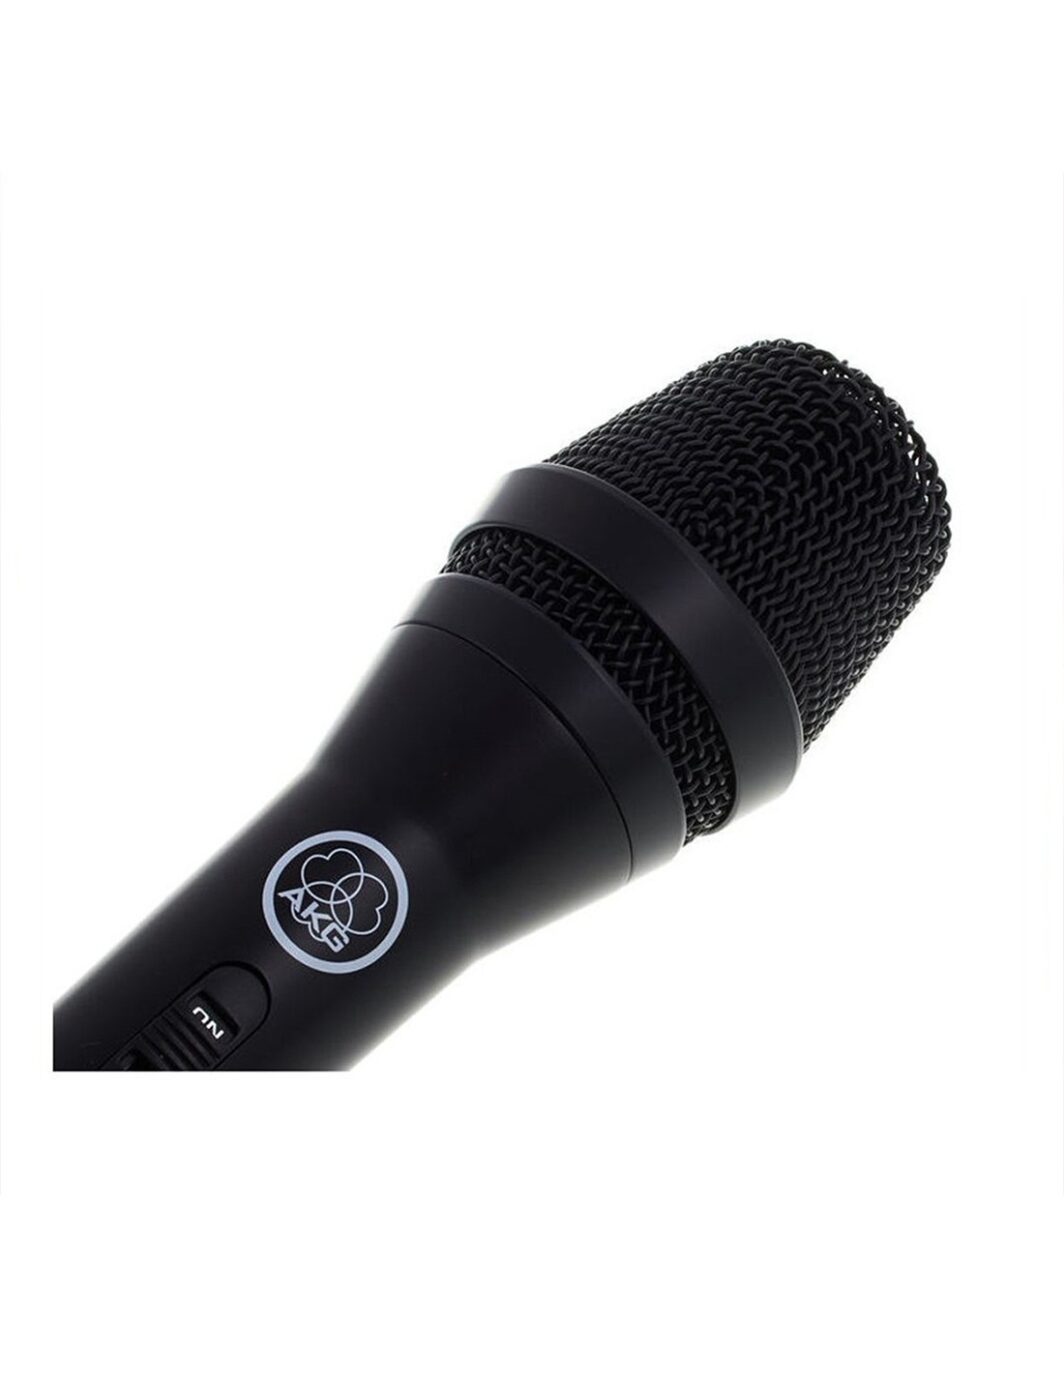 AKG P3S microfono dinamico